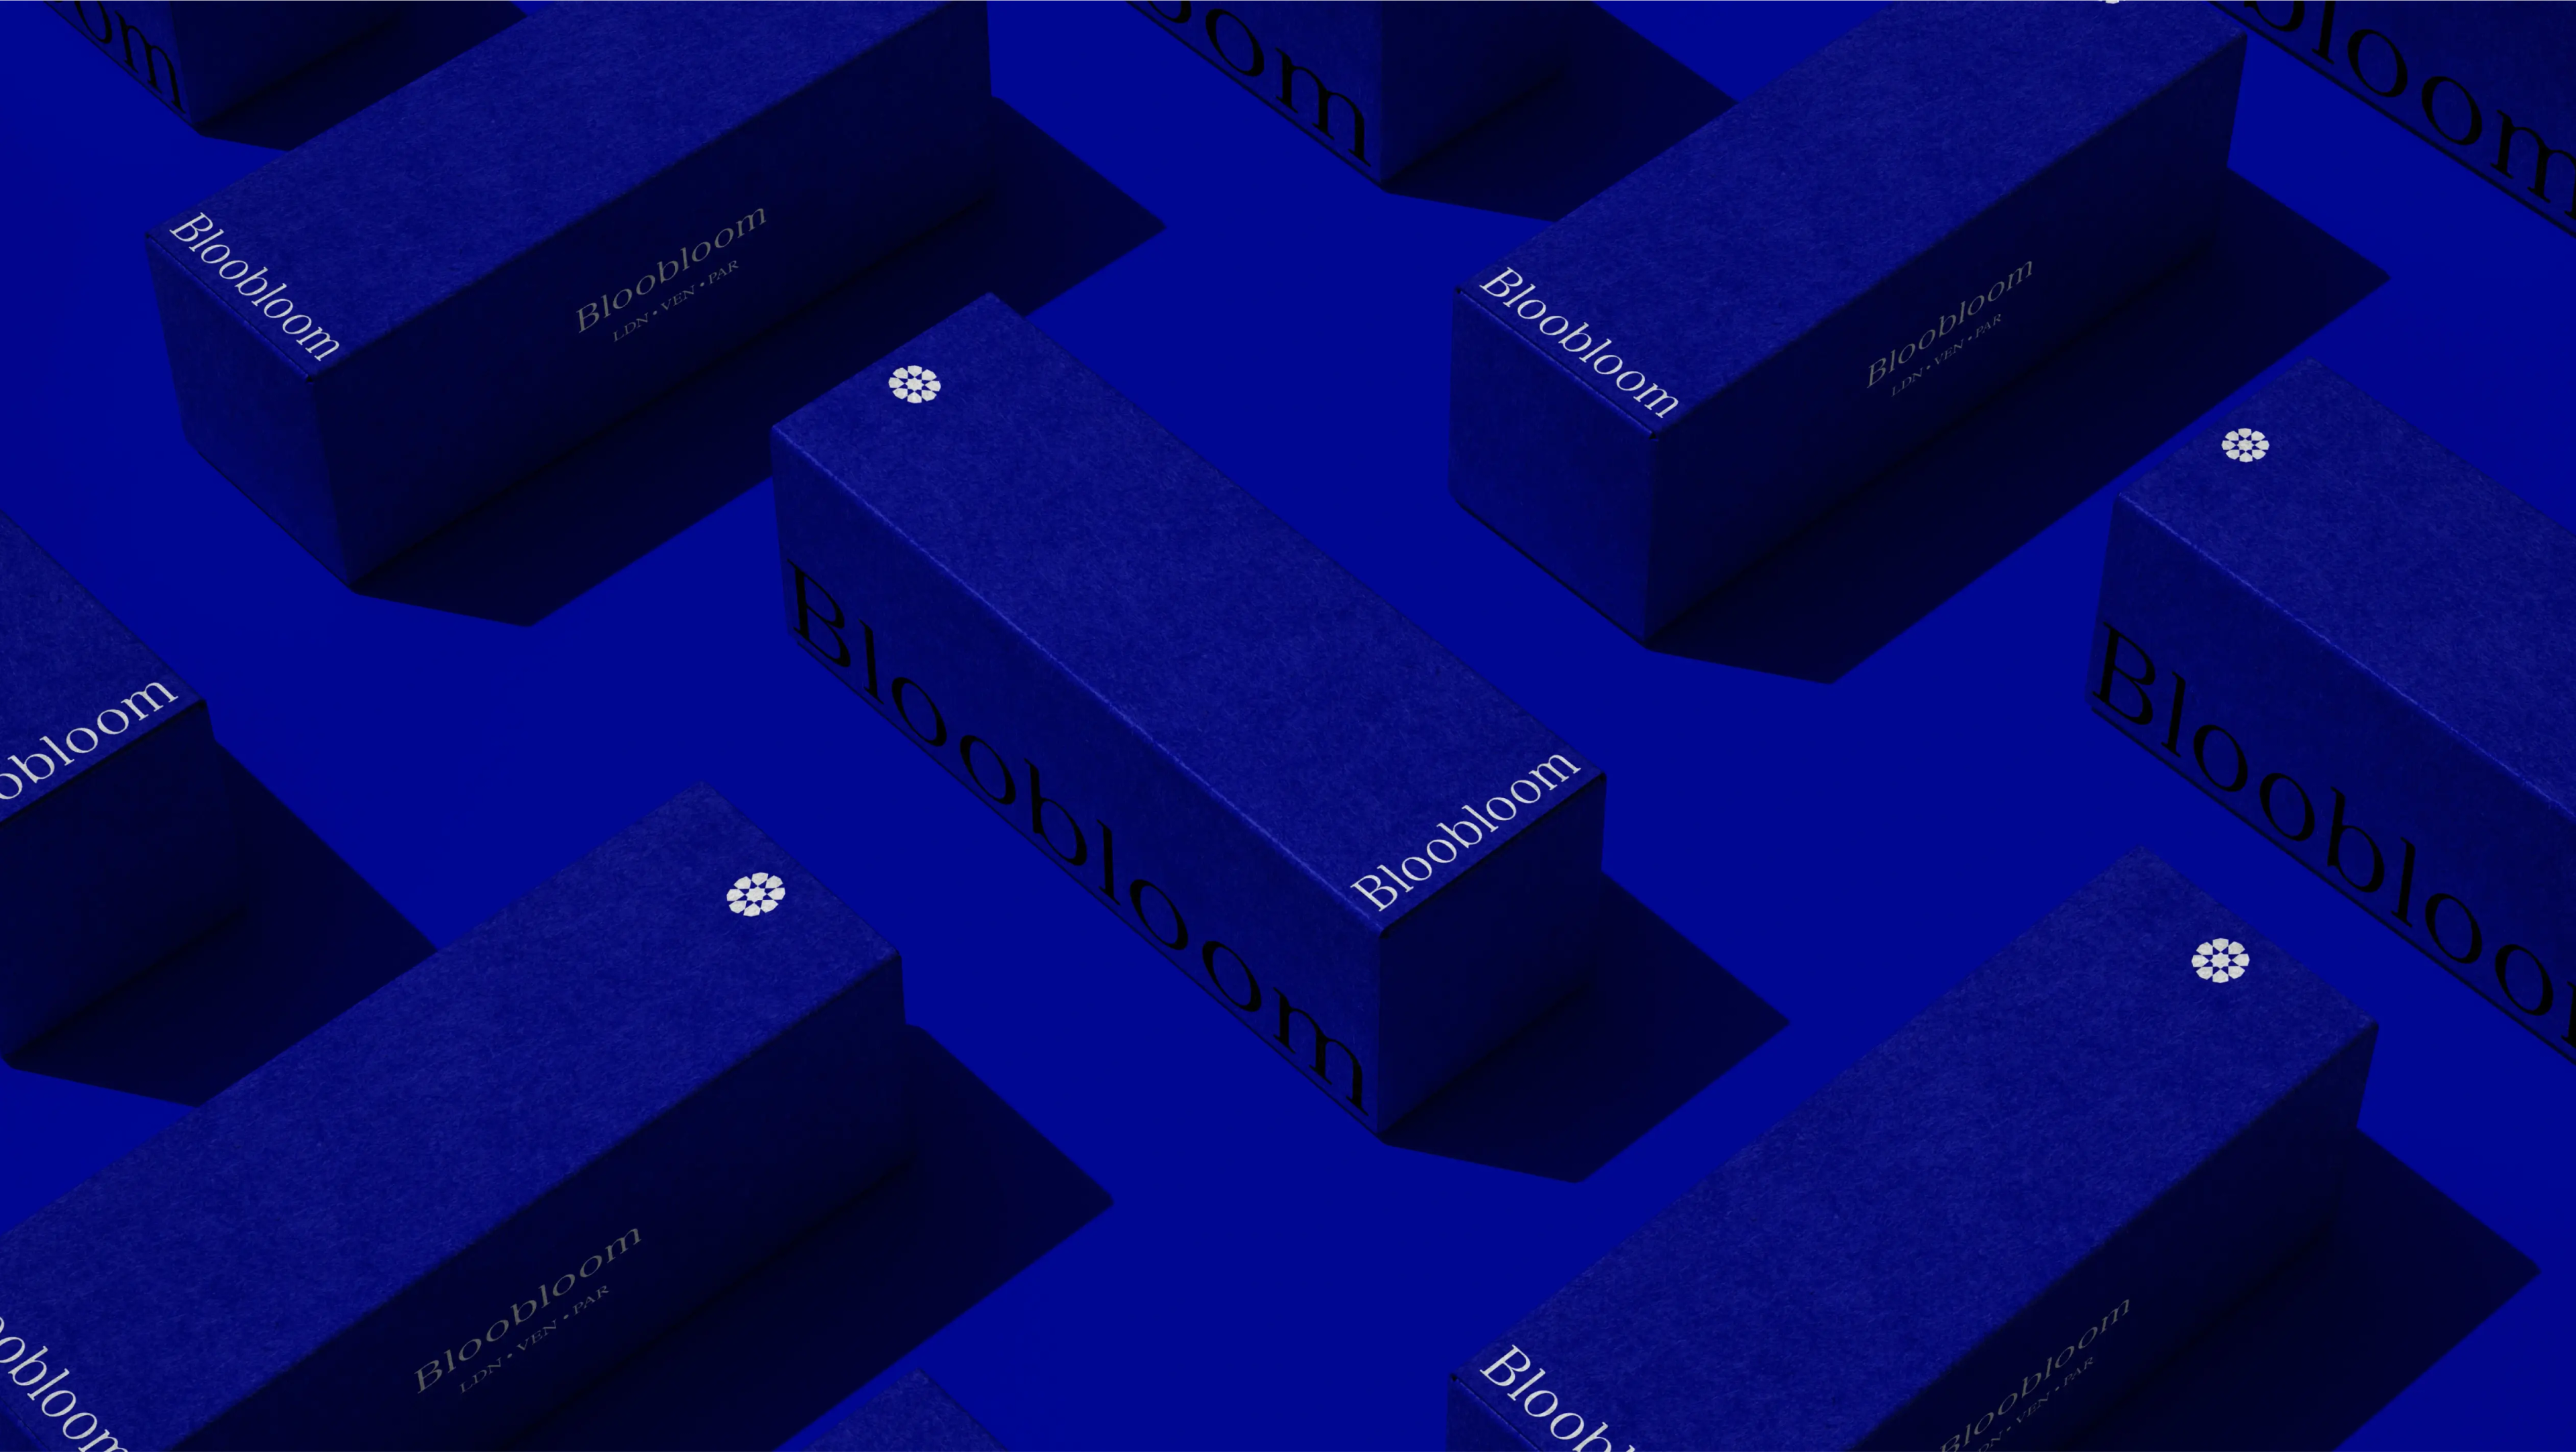 Bloobloom blue packaging by Bodkin Studio